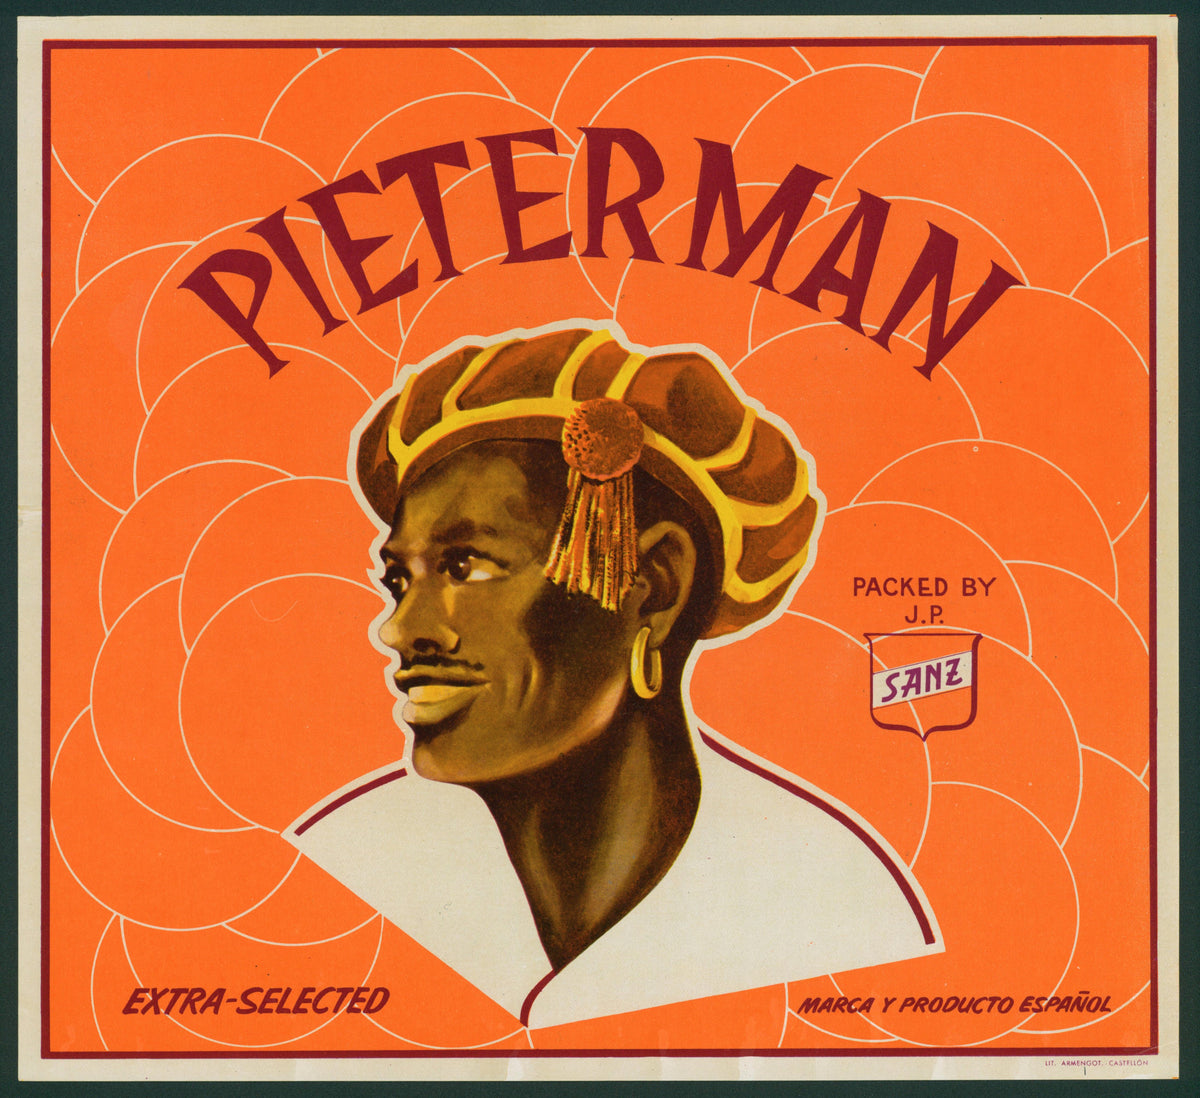 Pieterman- Spanish Crate Label - Authentic Vintage Antique Print